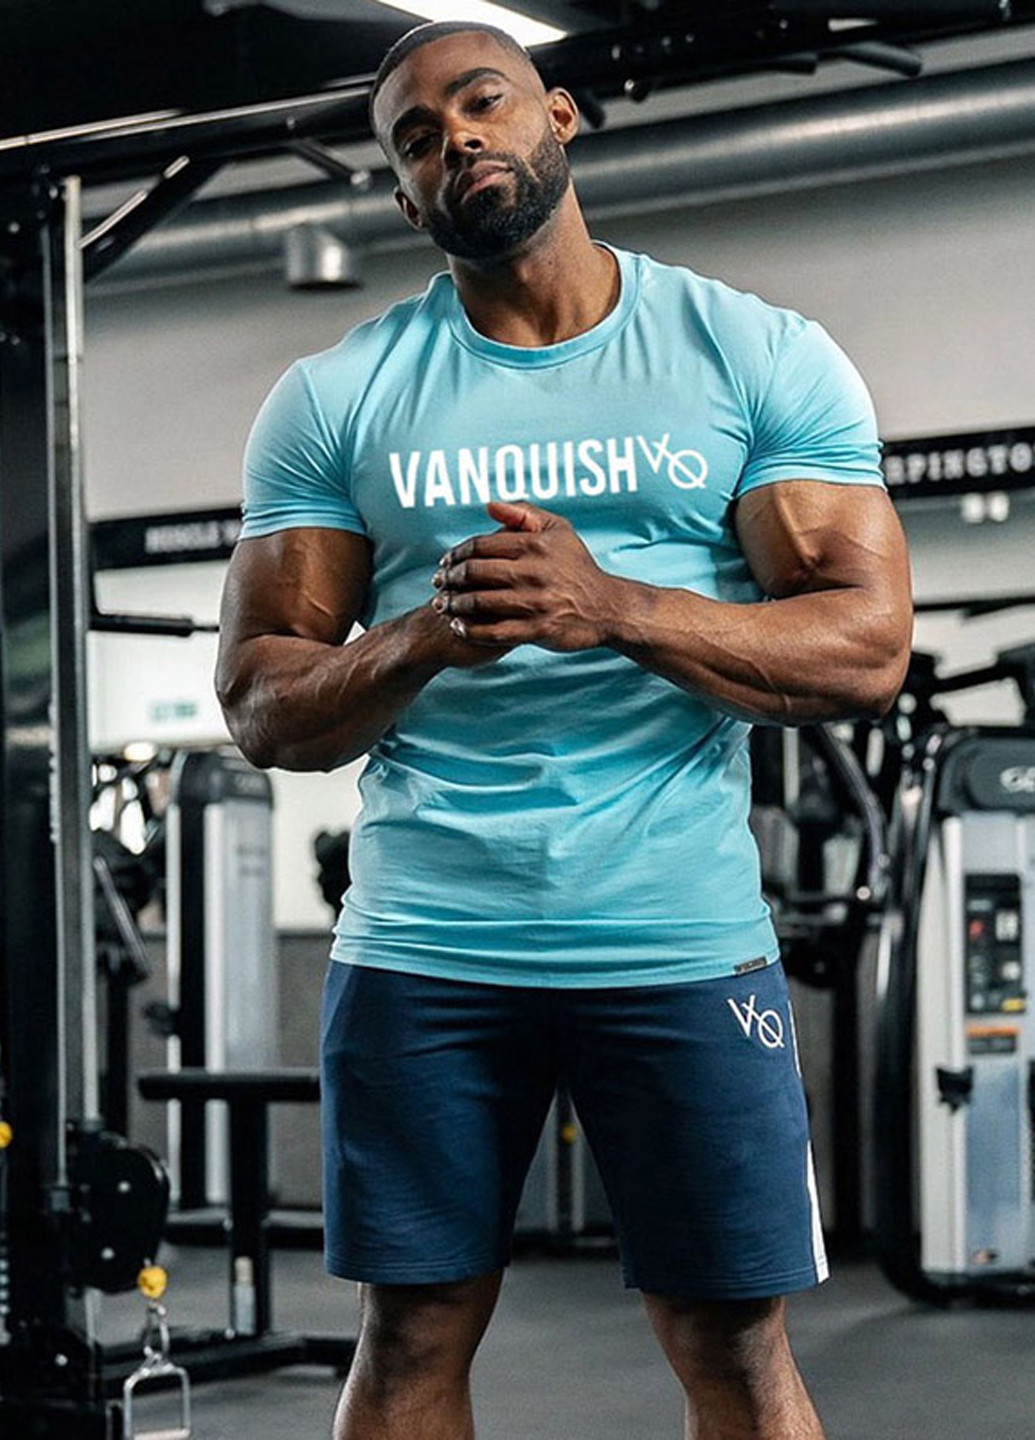 Голубая мужская футболка с коротким рукавом VQH